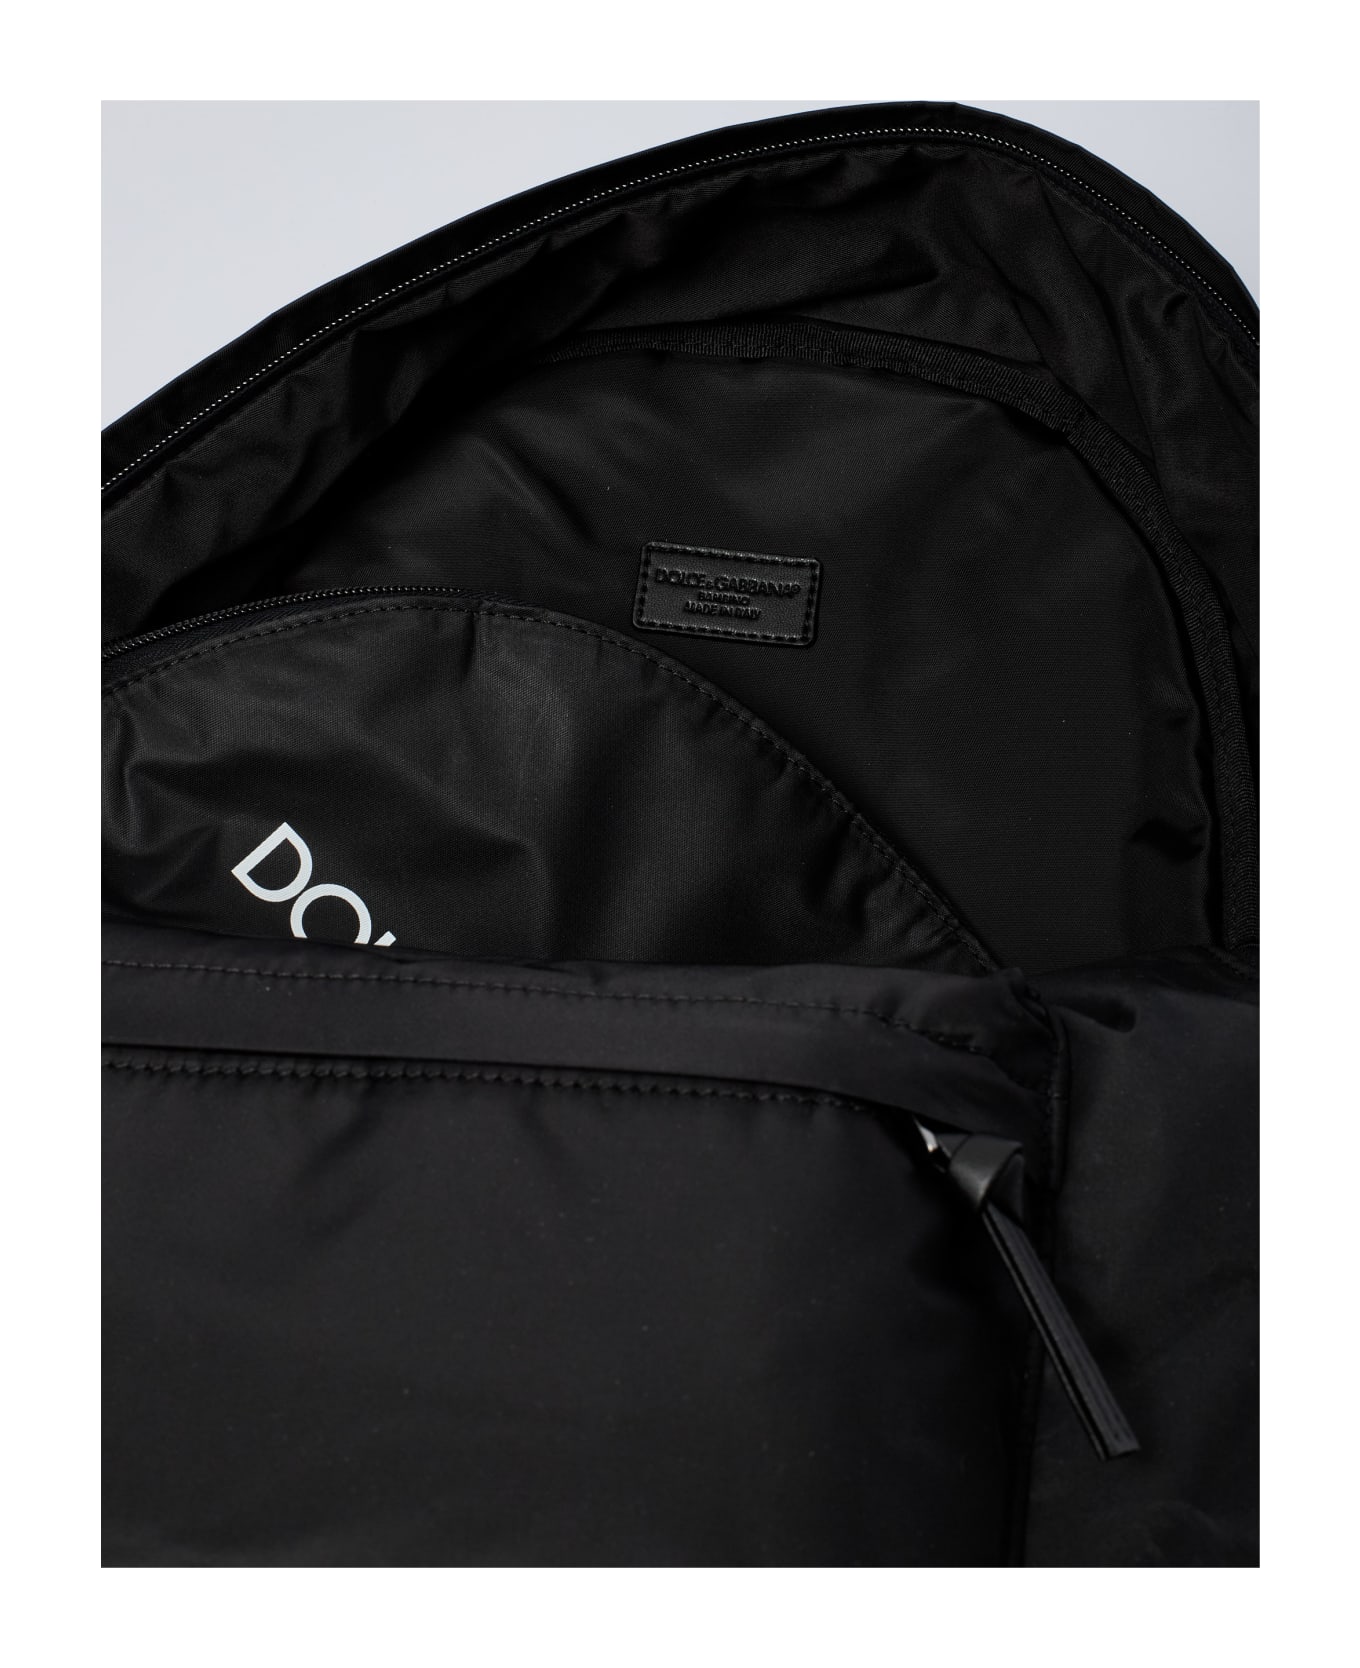 Dolce amp & Gabbana Backpack Backpack - NERO